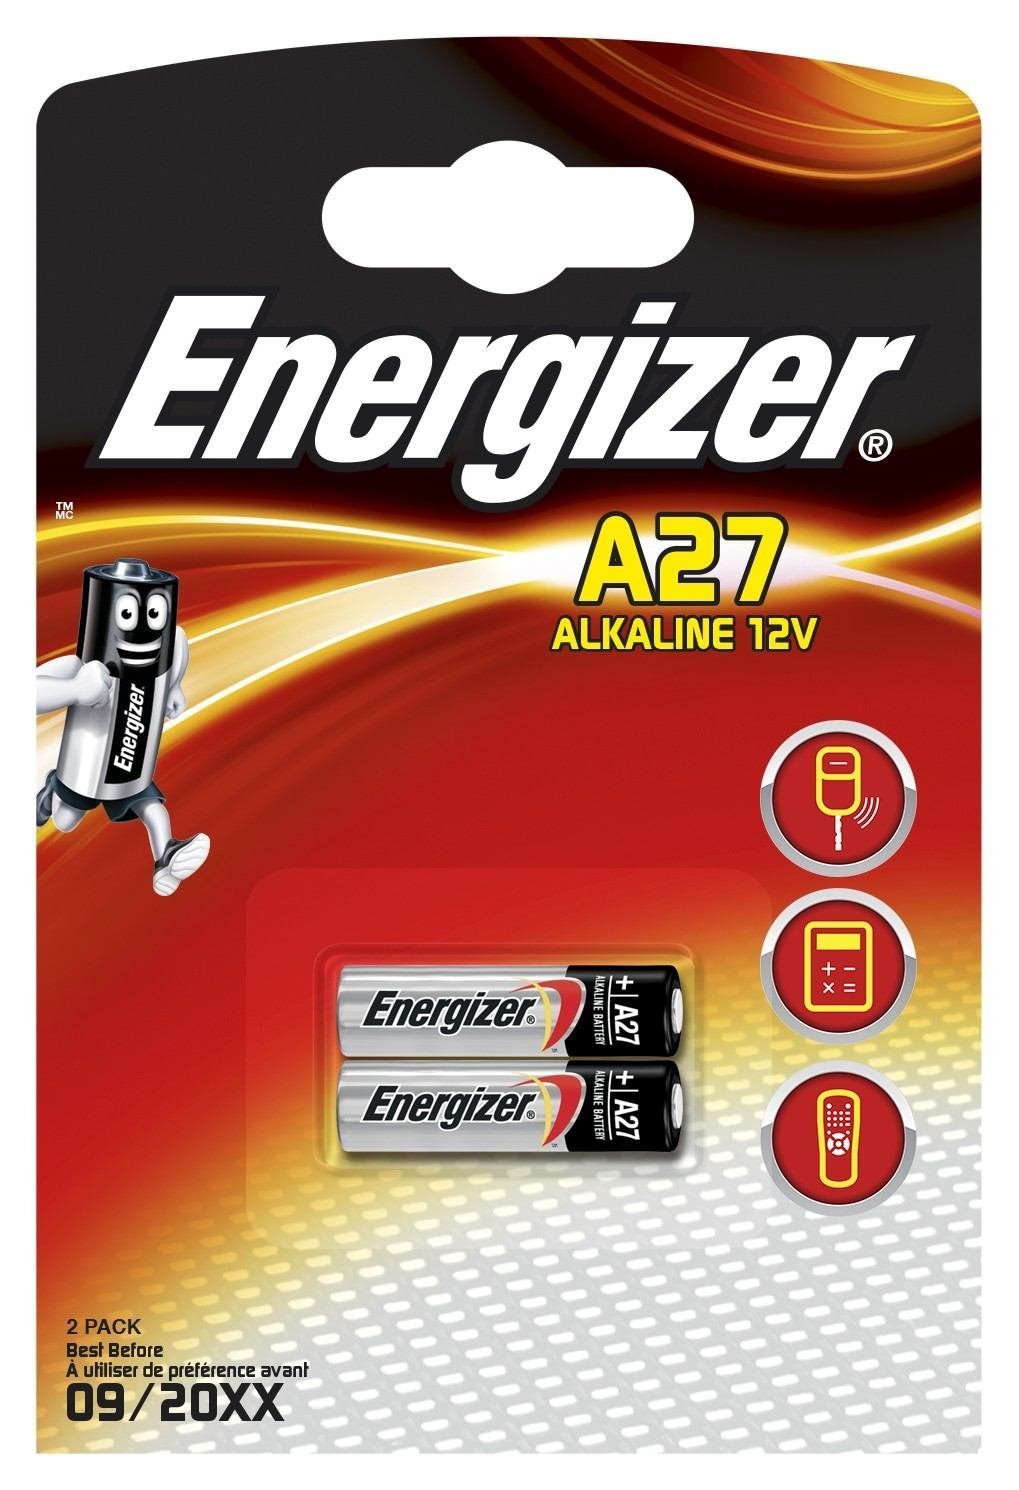 Energizer En-639333 (Alkaline A27 2PK - En-639333 Single-Use - Battery A27 Alkaline 12 V 2 PC[S] 23 mAh - Warranty: 12M)